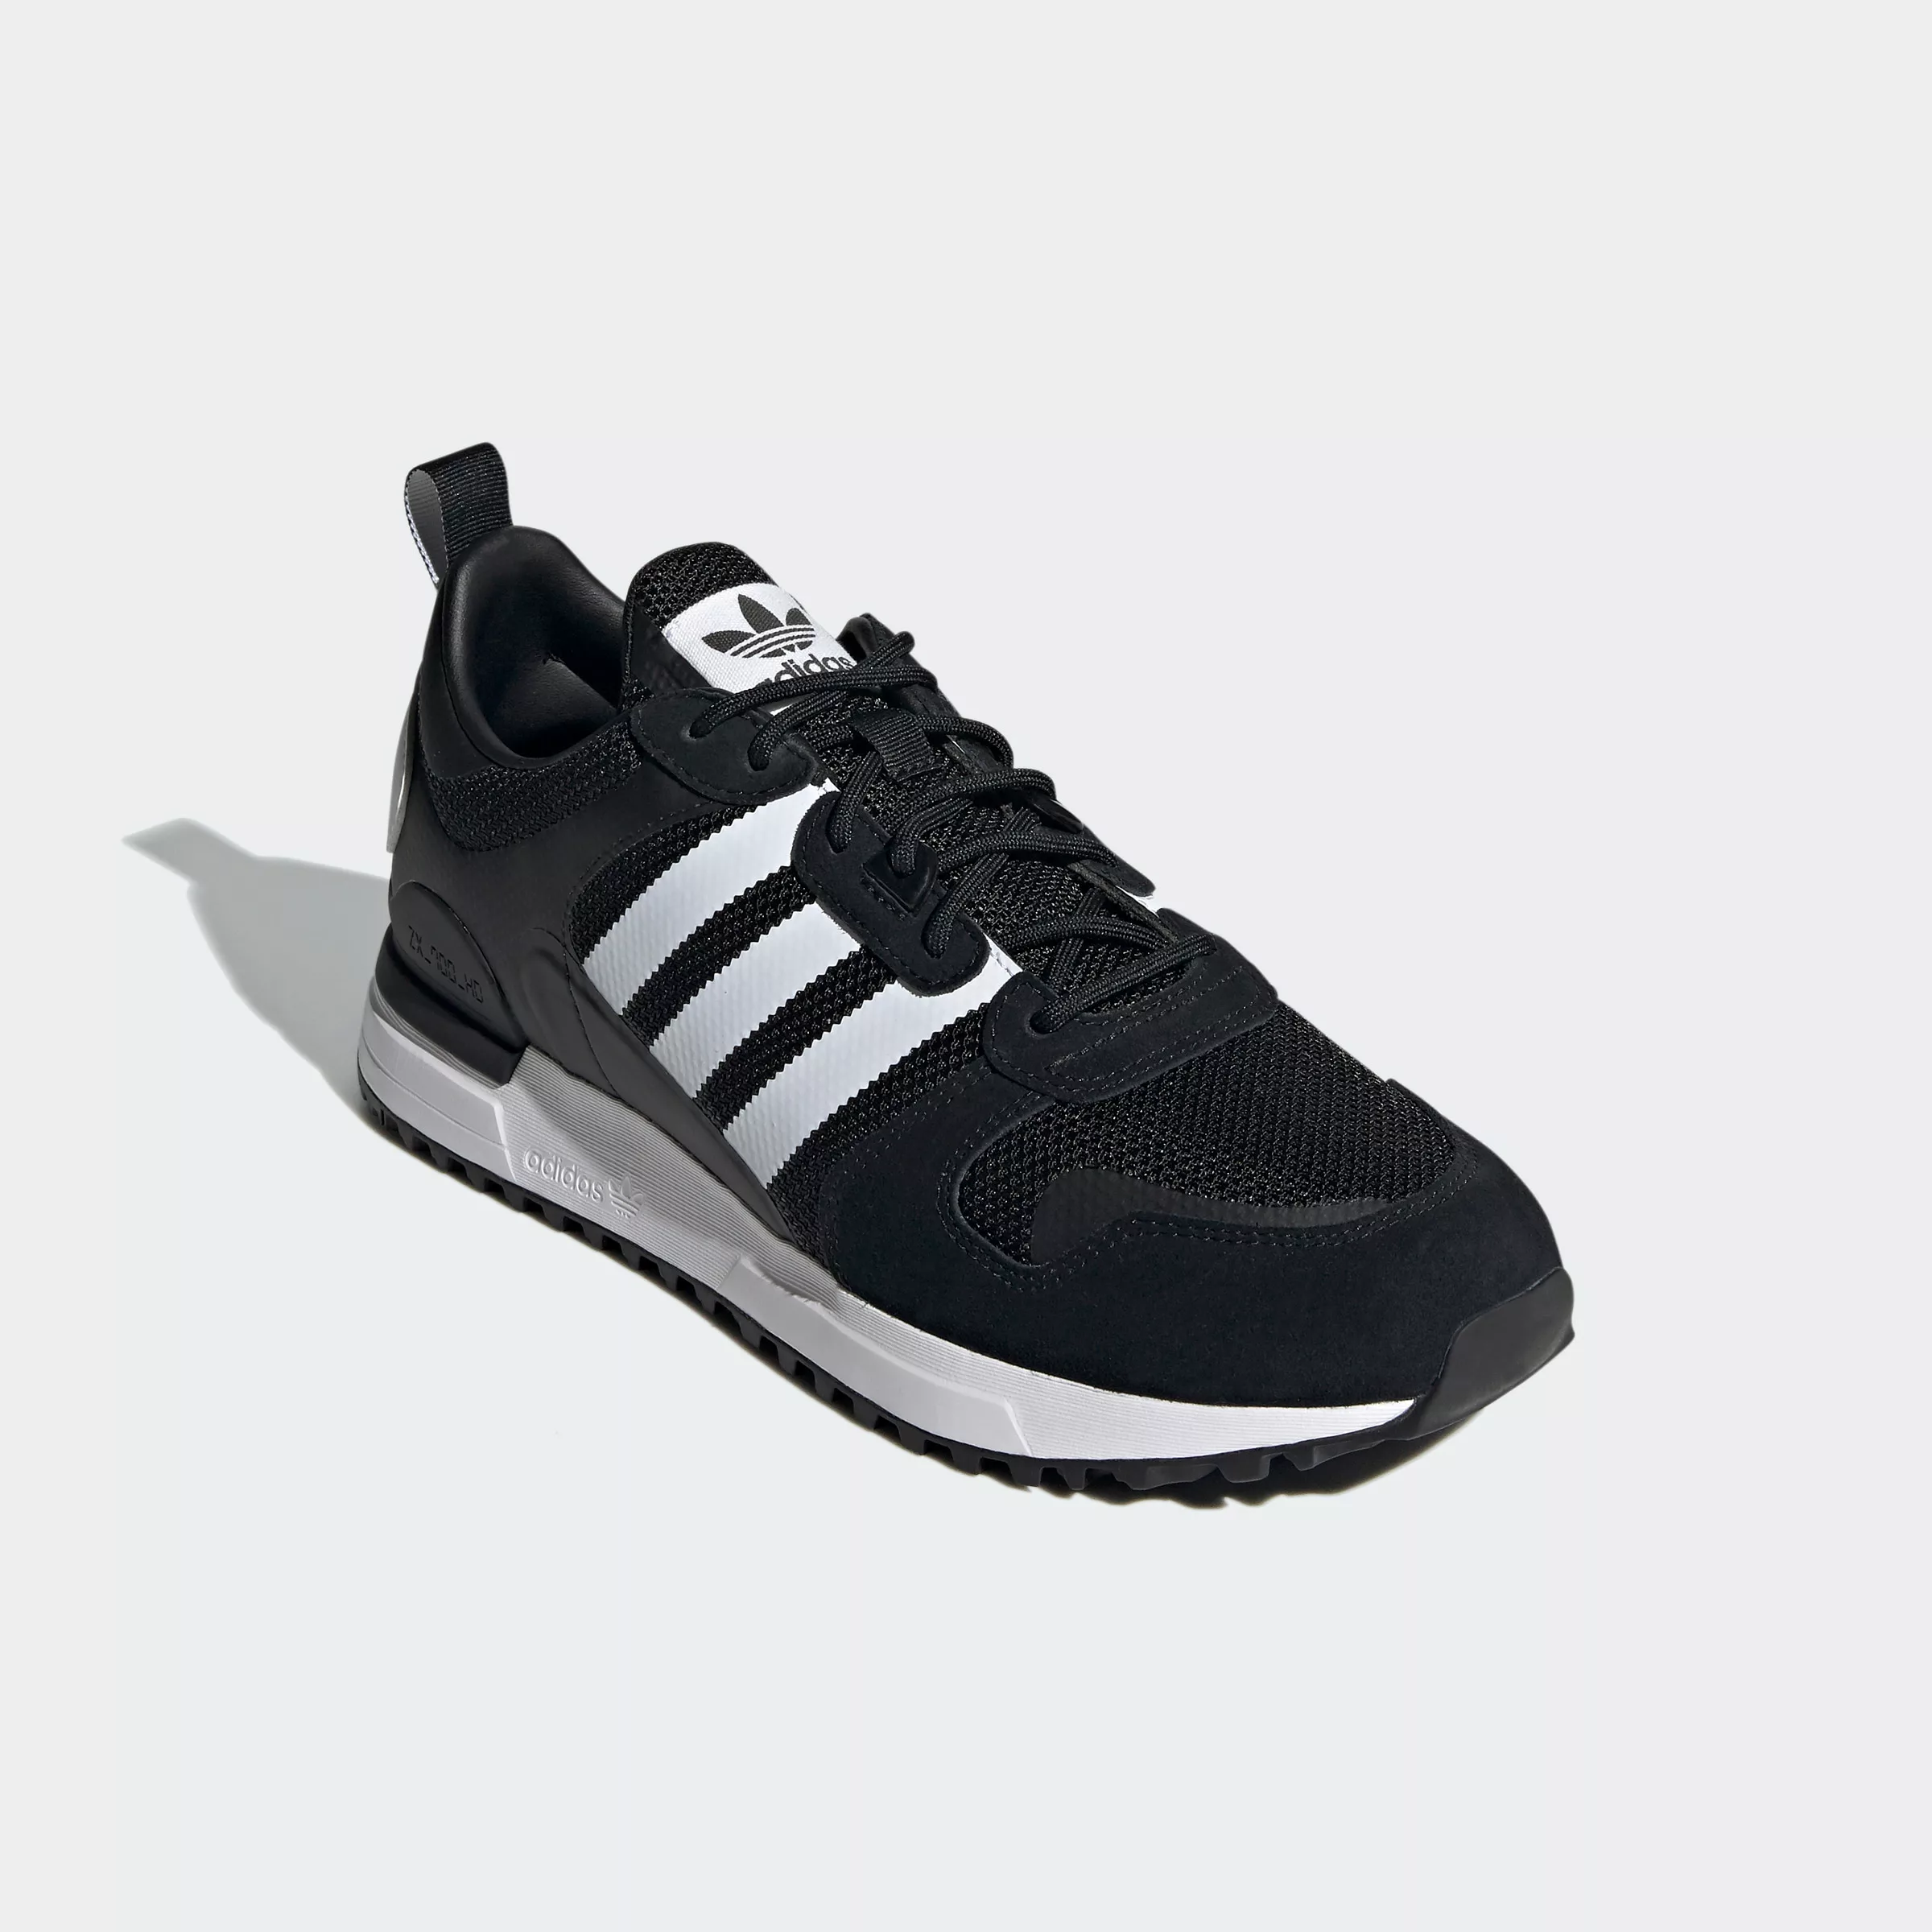 Adidas Originals Zx 700 Hd Sportschuhe EU 41 1/3 Core Black / Footwear Whit günstig online kaufen